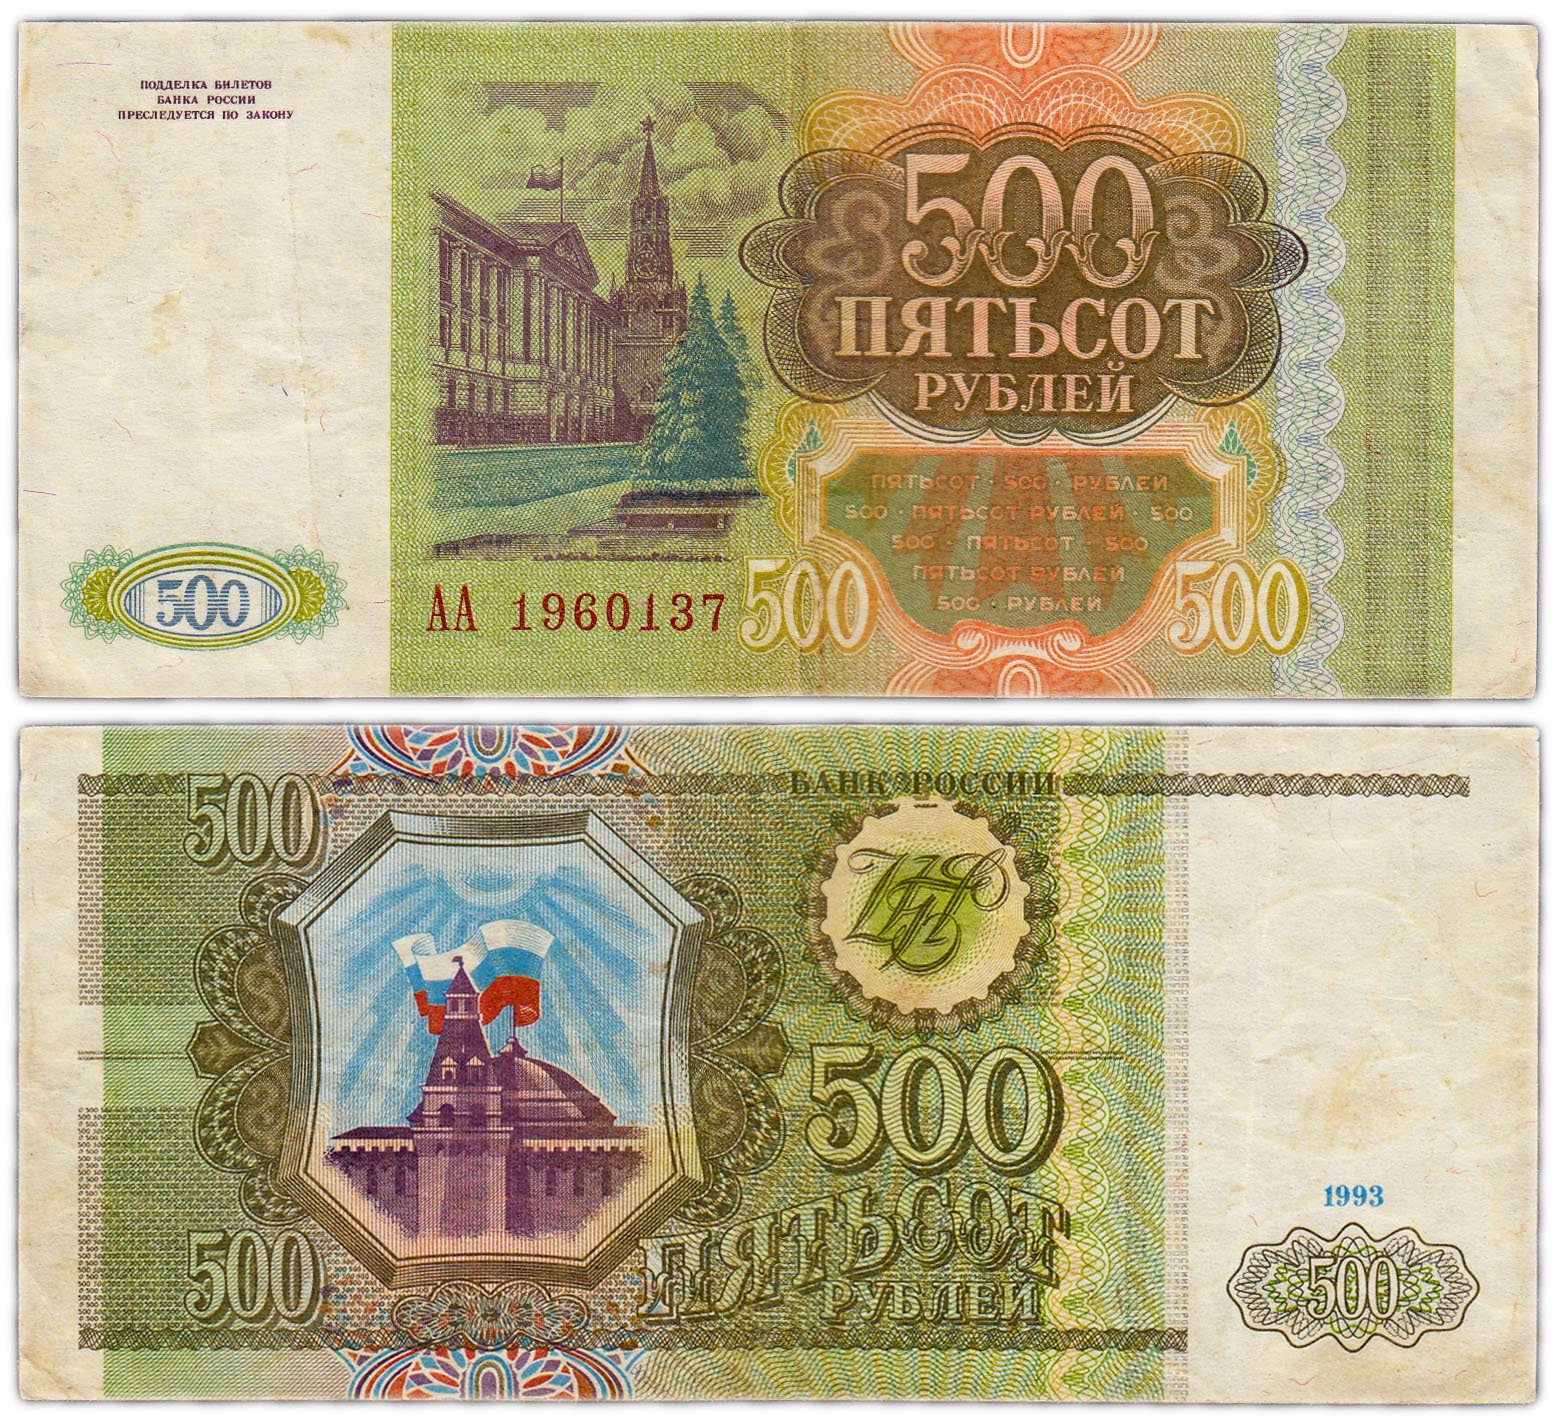 500 российских рублей. 500 Рублей 1993. Купюра 500 рублей 1993 года. Банкнота 500 рублей 1993. Купюра 500 рублей 1993.